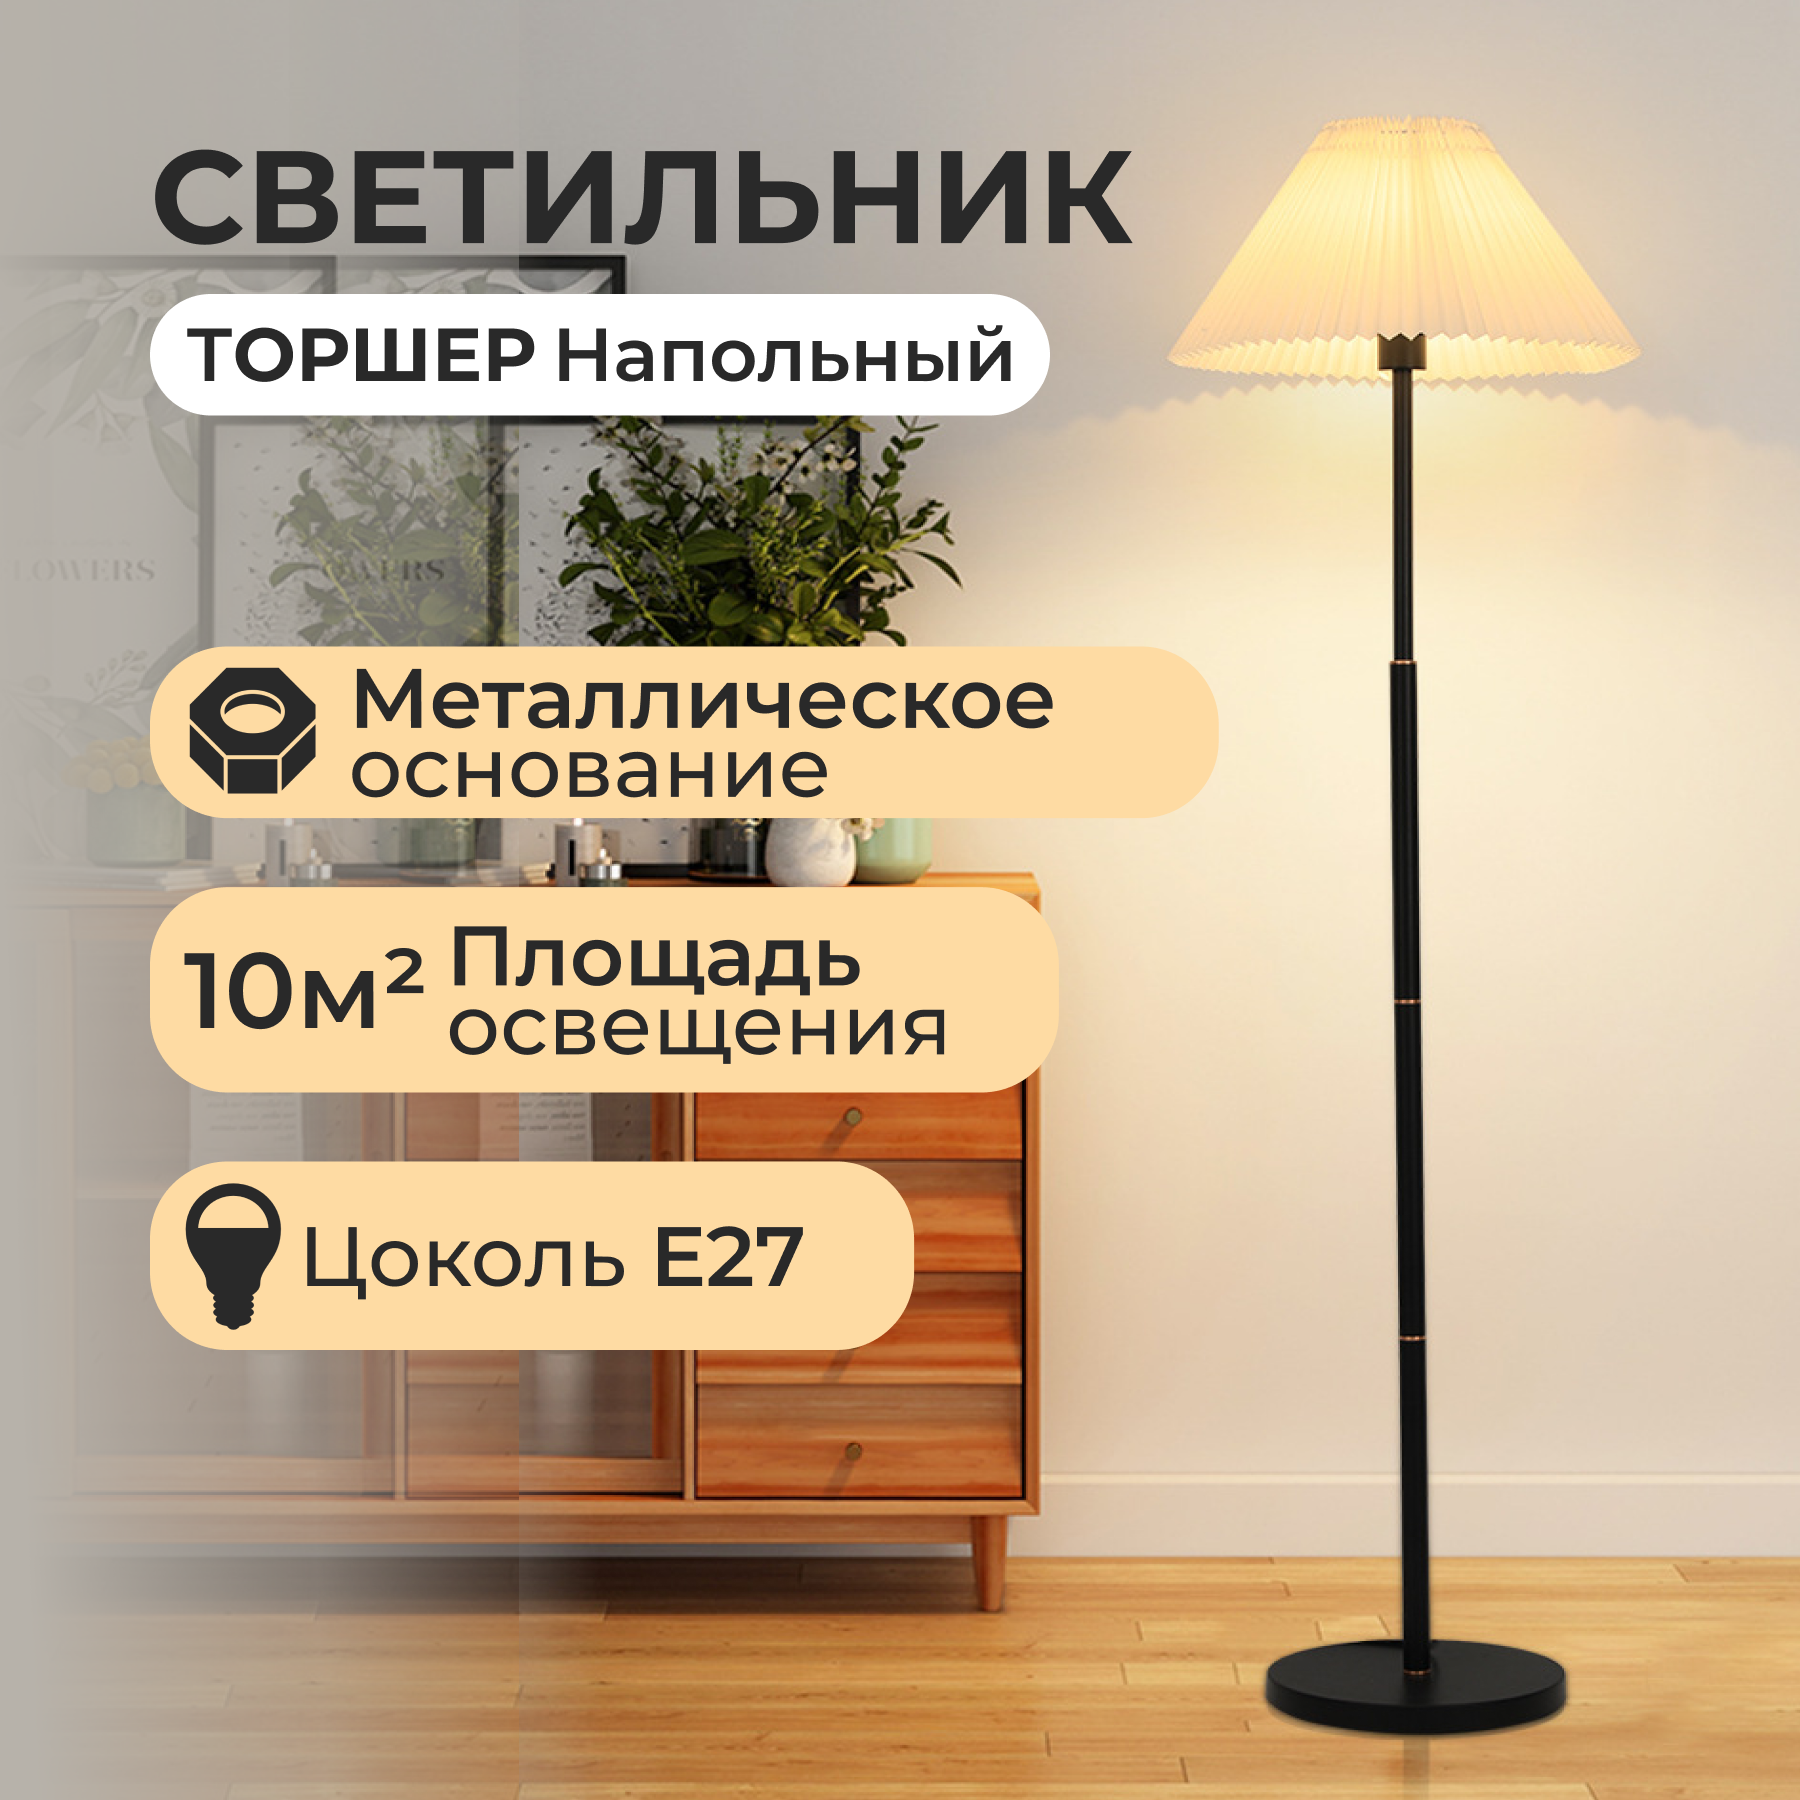 Ищете где купить светильники или люстру в Минске?